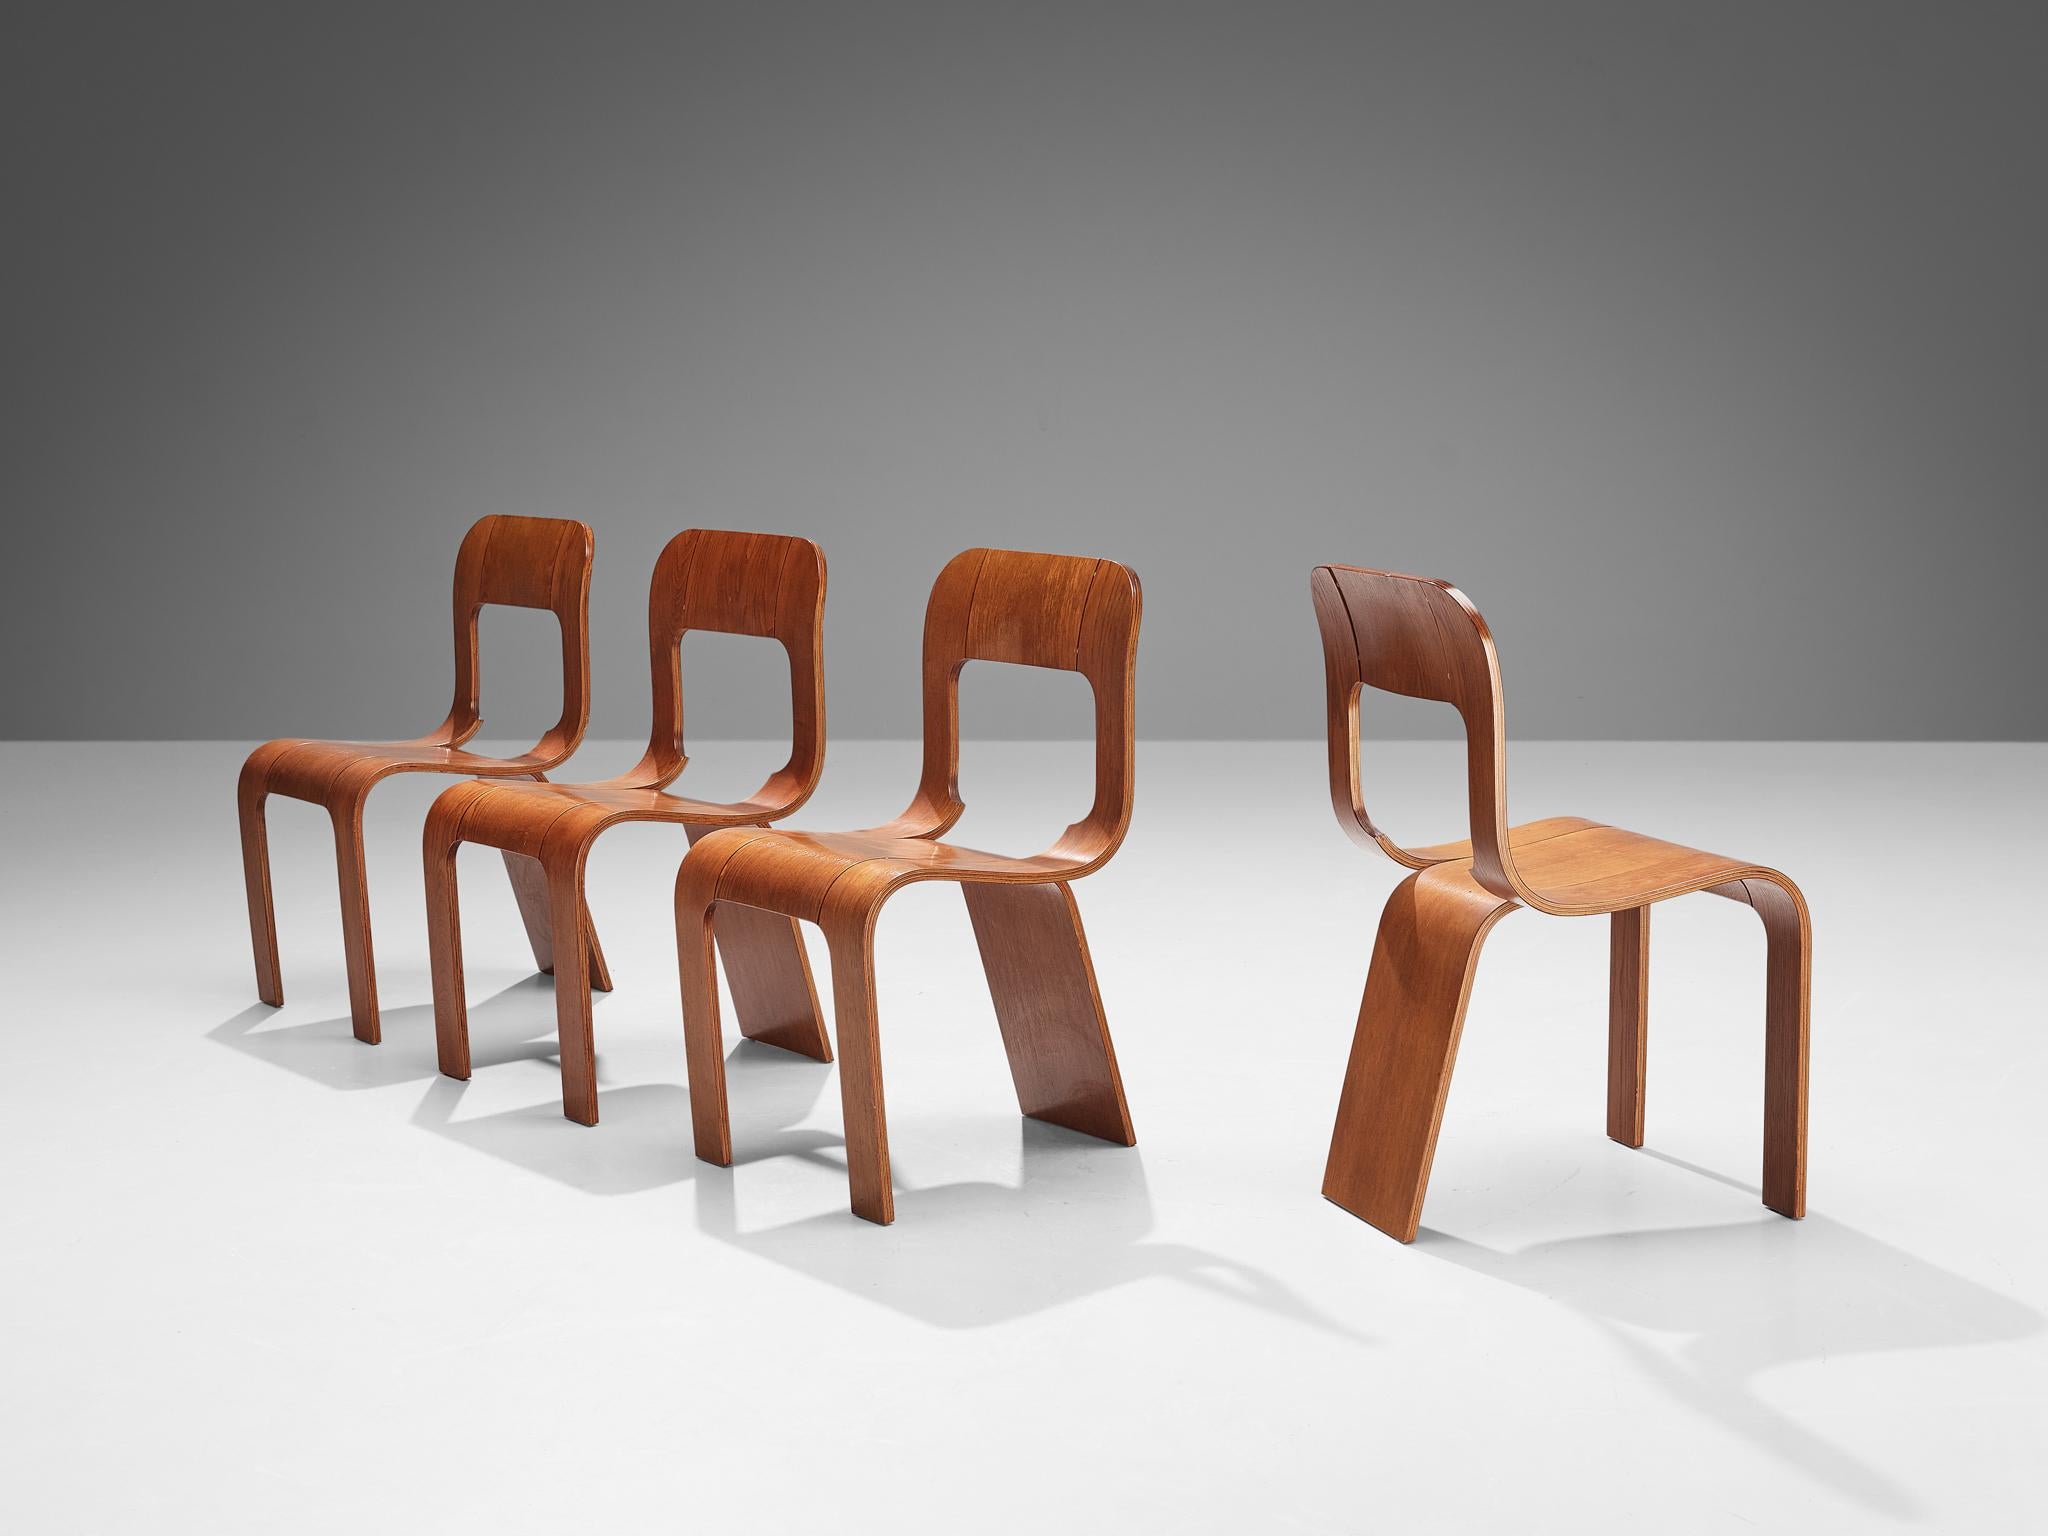 Gigi Sabadin pour Stilwood, ensemble de quatre chaises de salle à manger, contreplaqué de frêne, Italie, années 1970.

Design inventif de l'Italien Gigi Sabadin, ces chaises sont fabriquées en contreplaqué cintré avec une finition plaquée. Le design